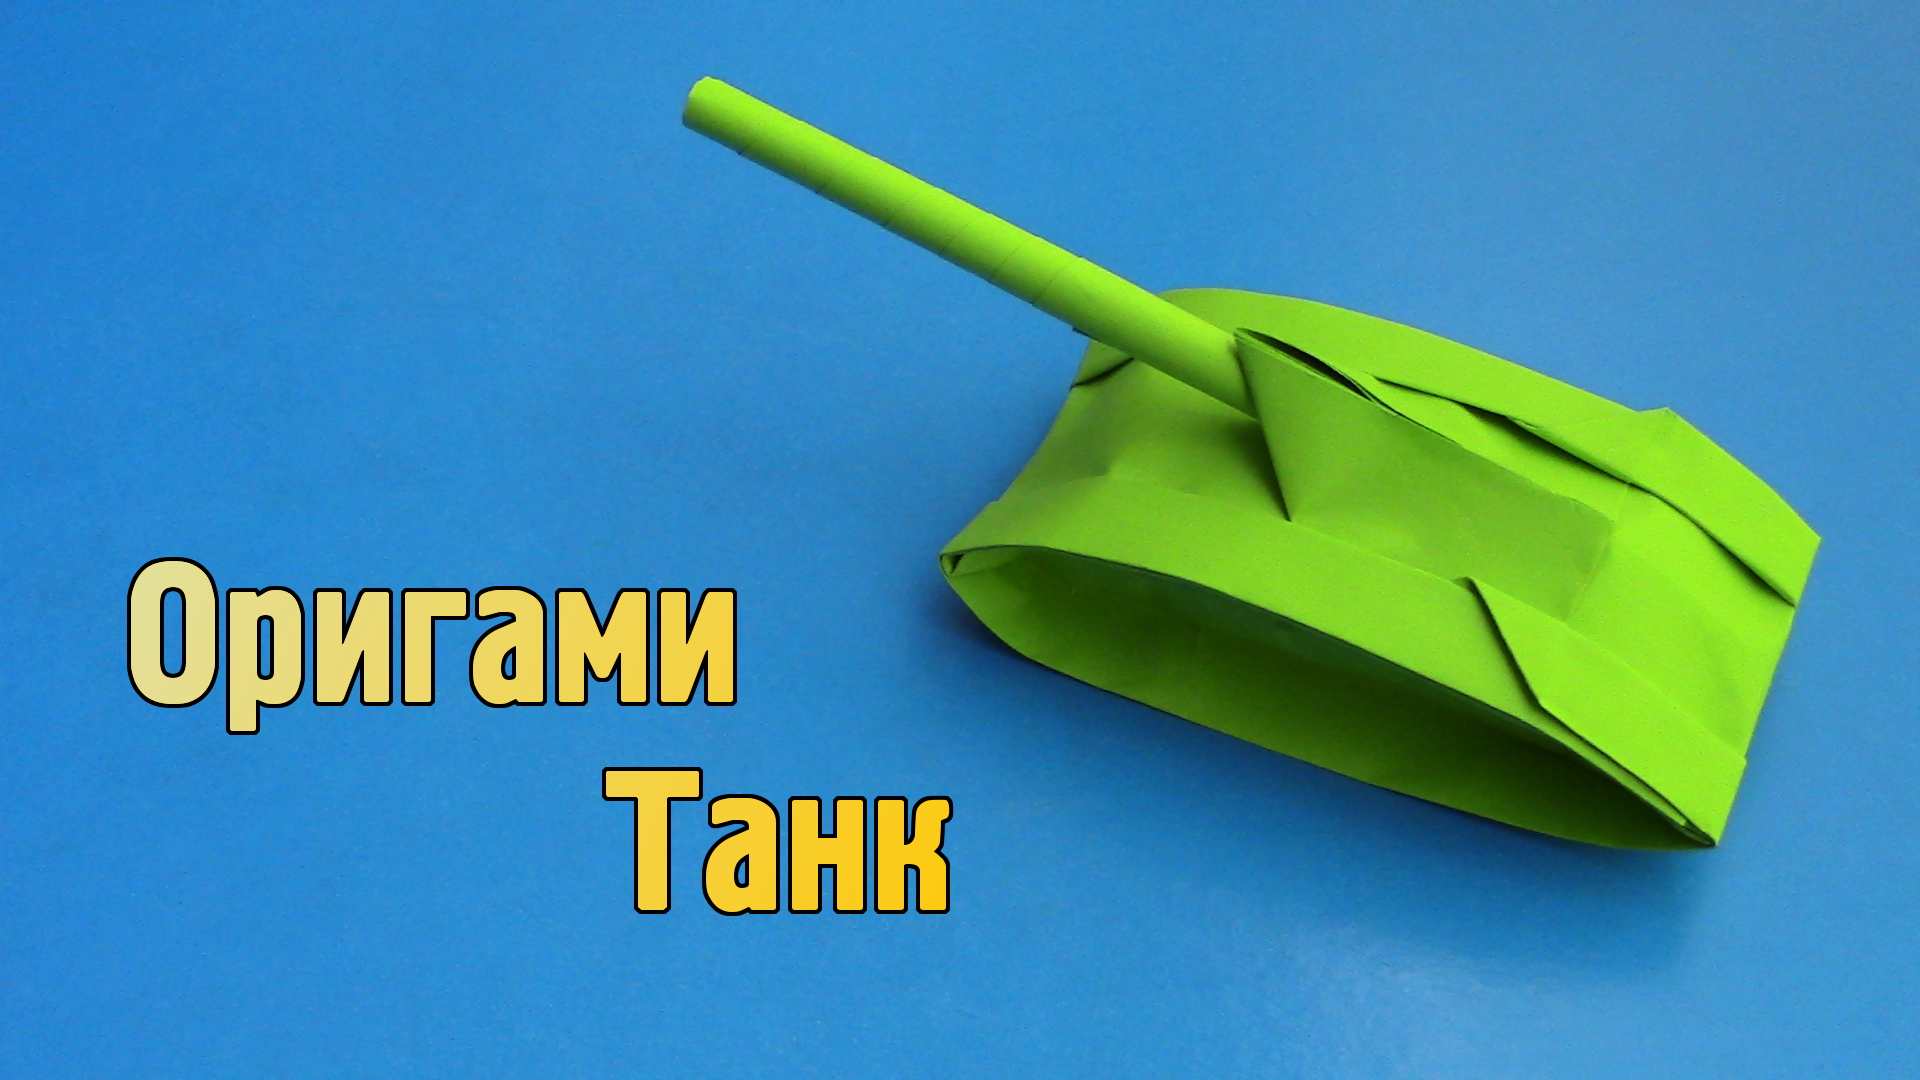 Как сделать танк оригами своими руками: пошаговая инструкция